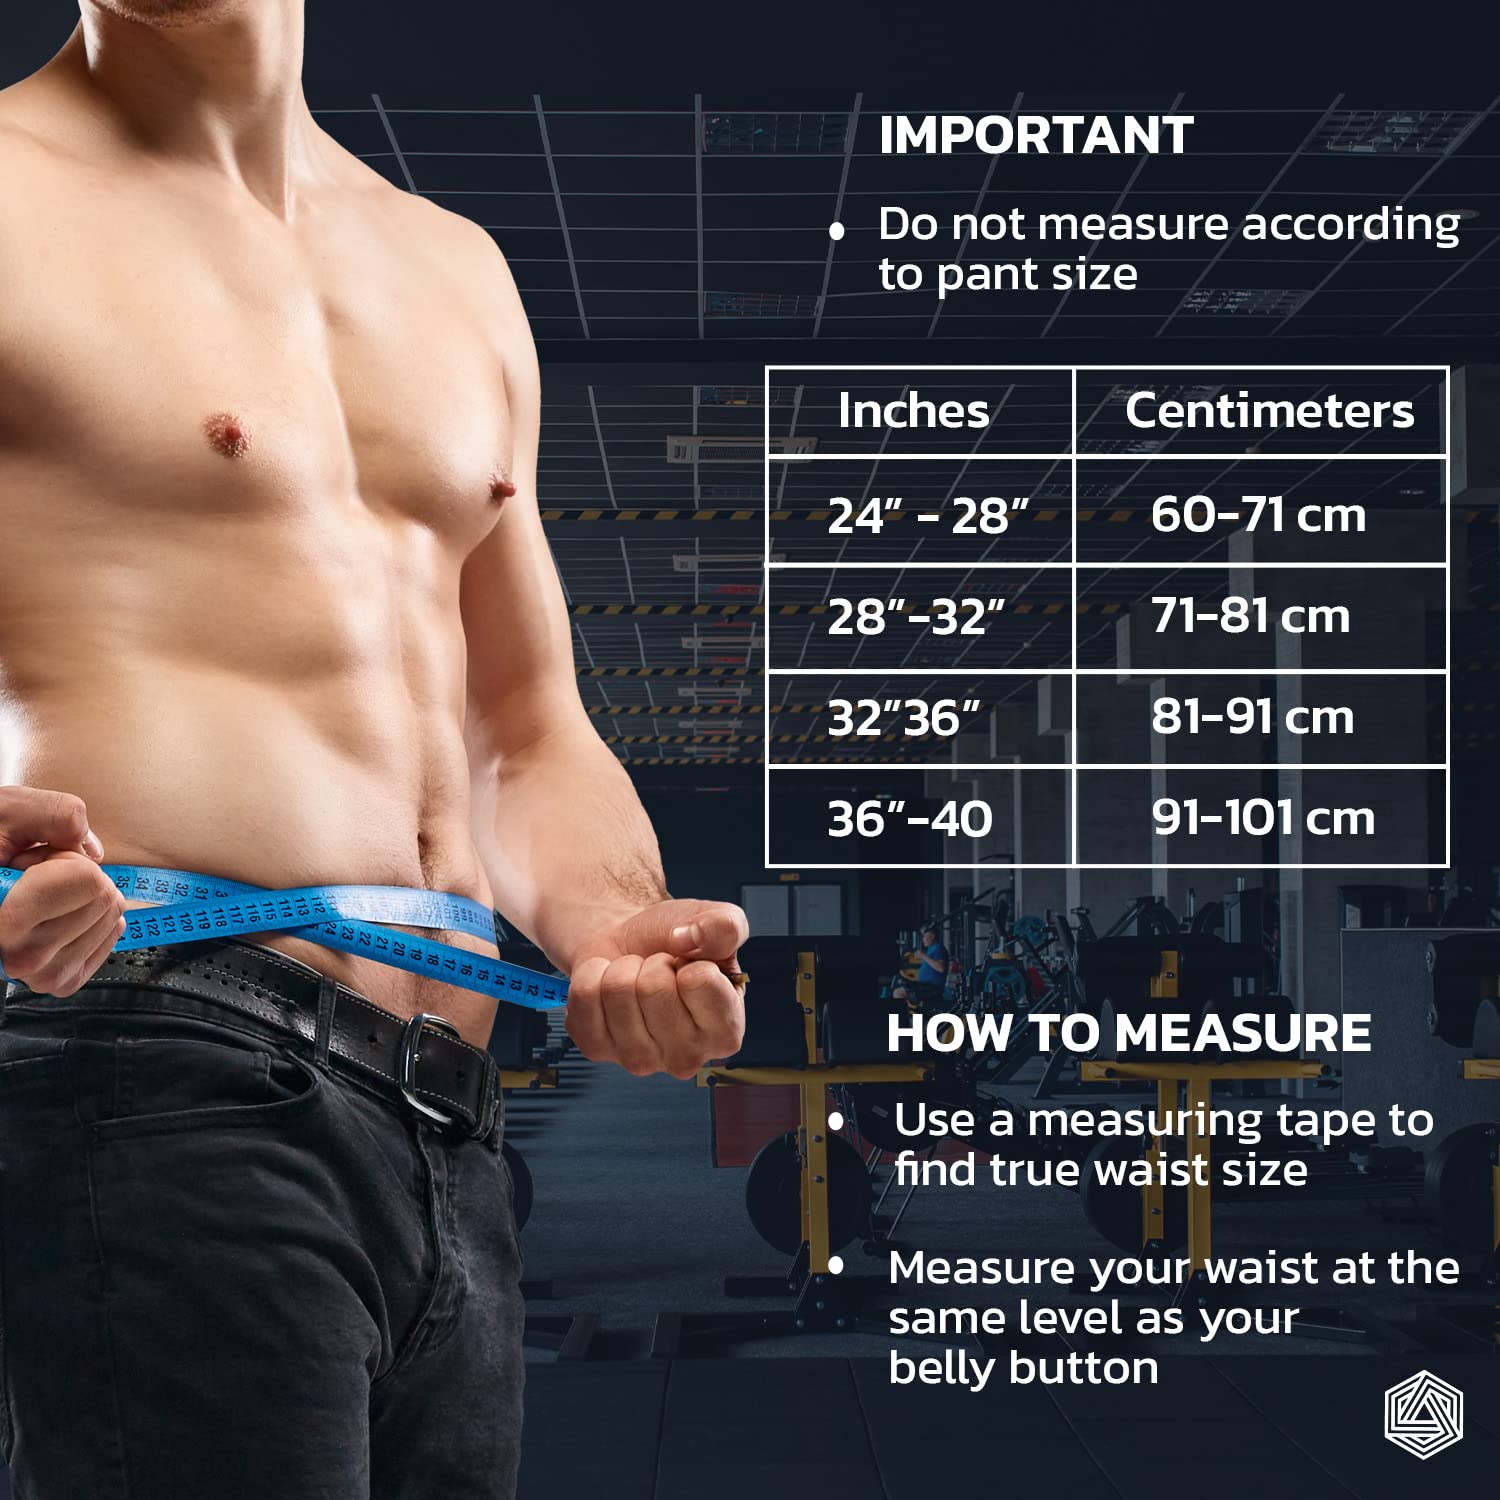 Weightlifting Gym Belt